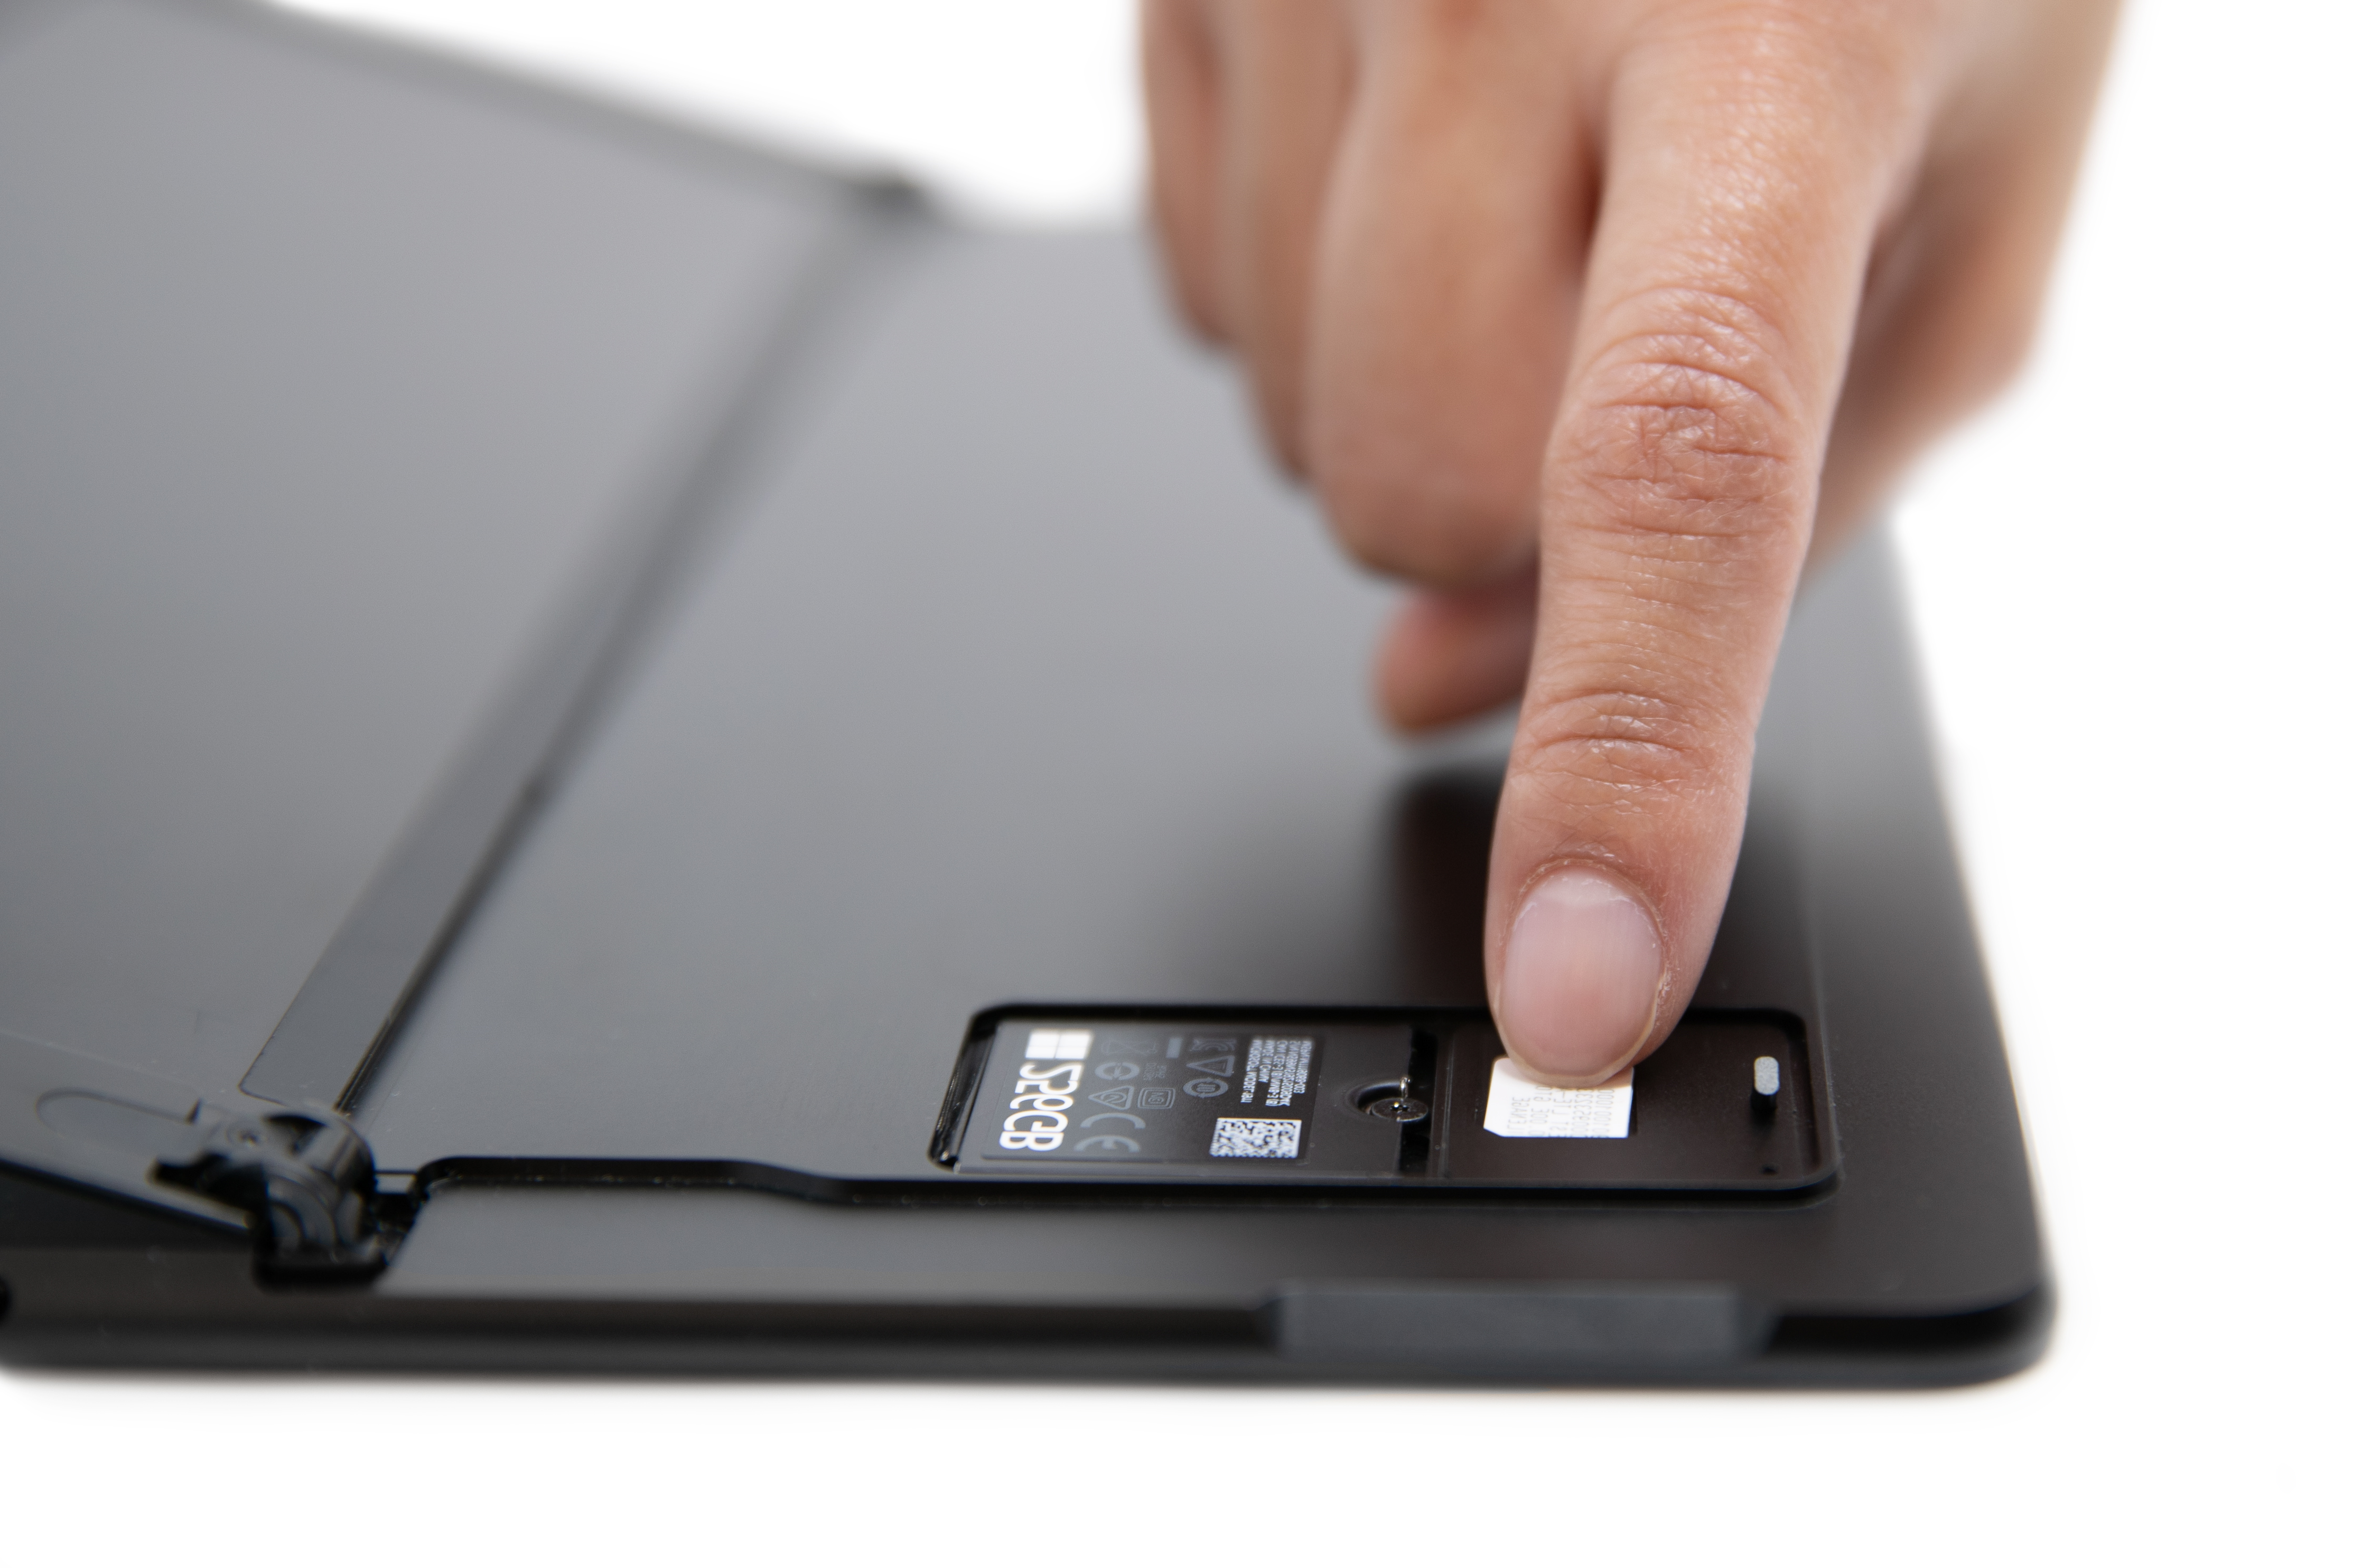 אדם גולש בכרטיס SIM לתוך החריץ של Surface Pro X SIM.